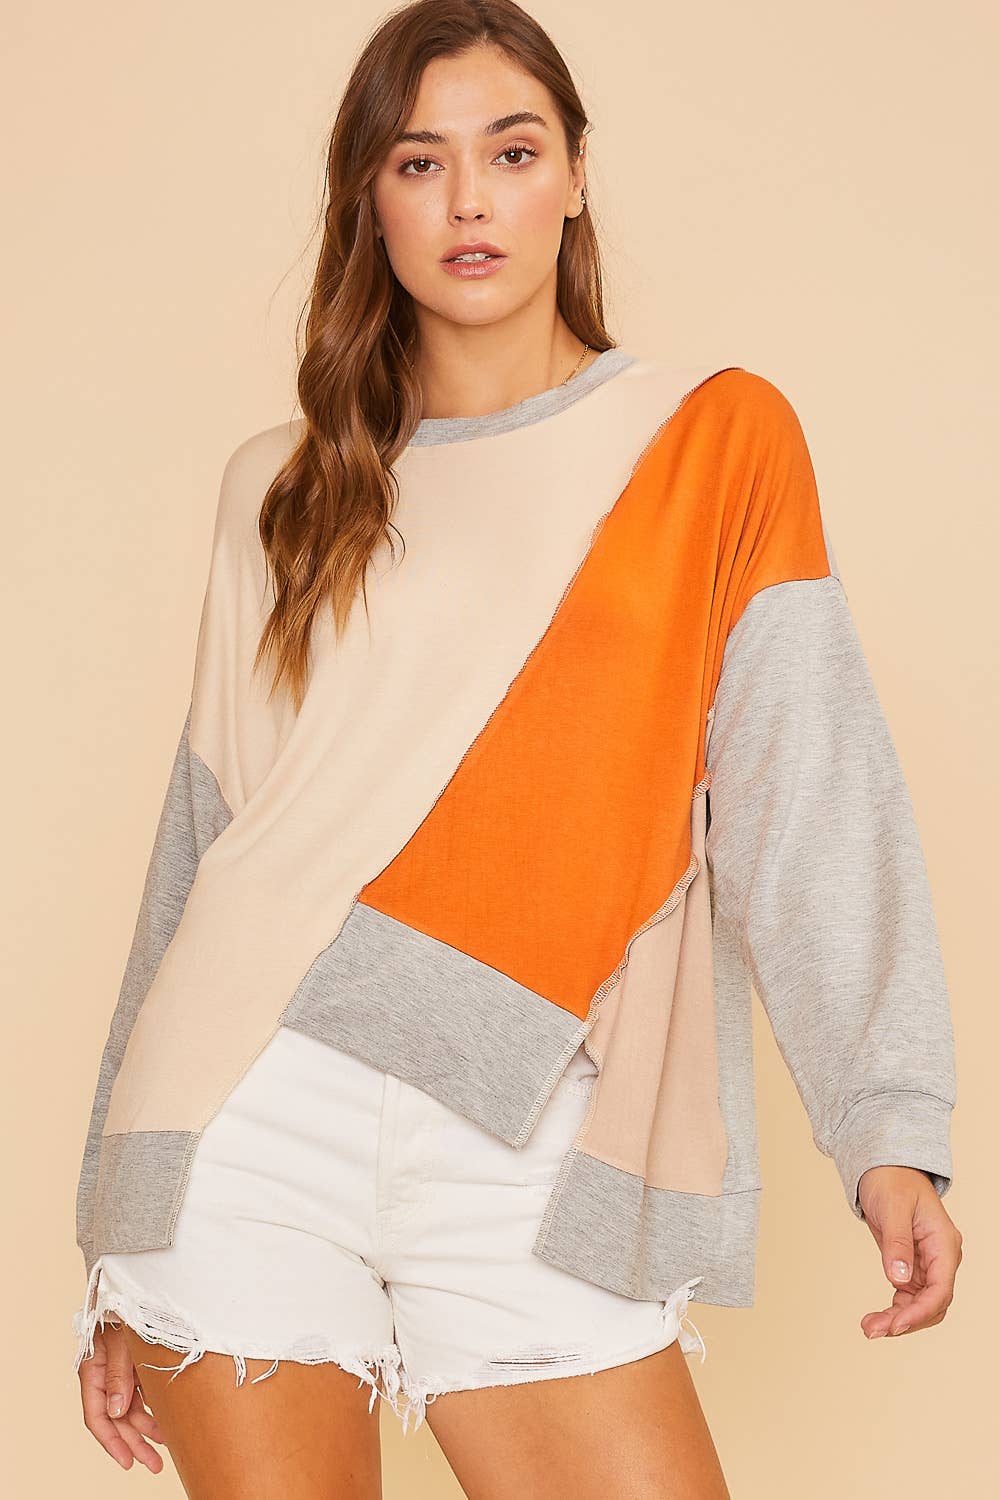 Color Block Soft Knit Top - Modish Maven Boutique